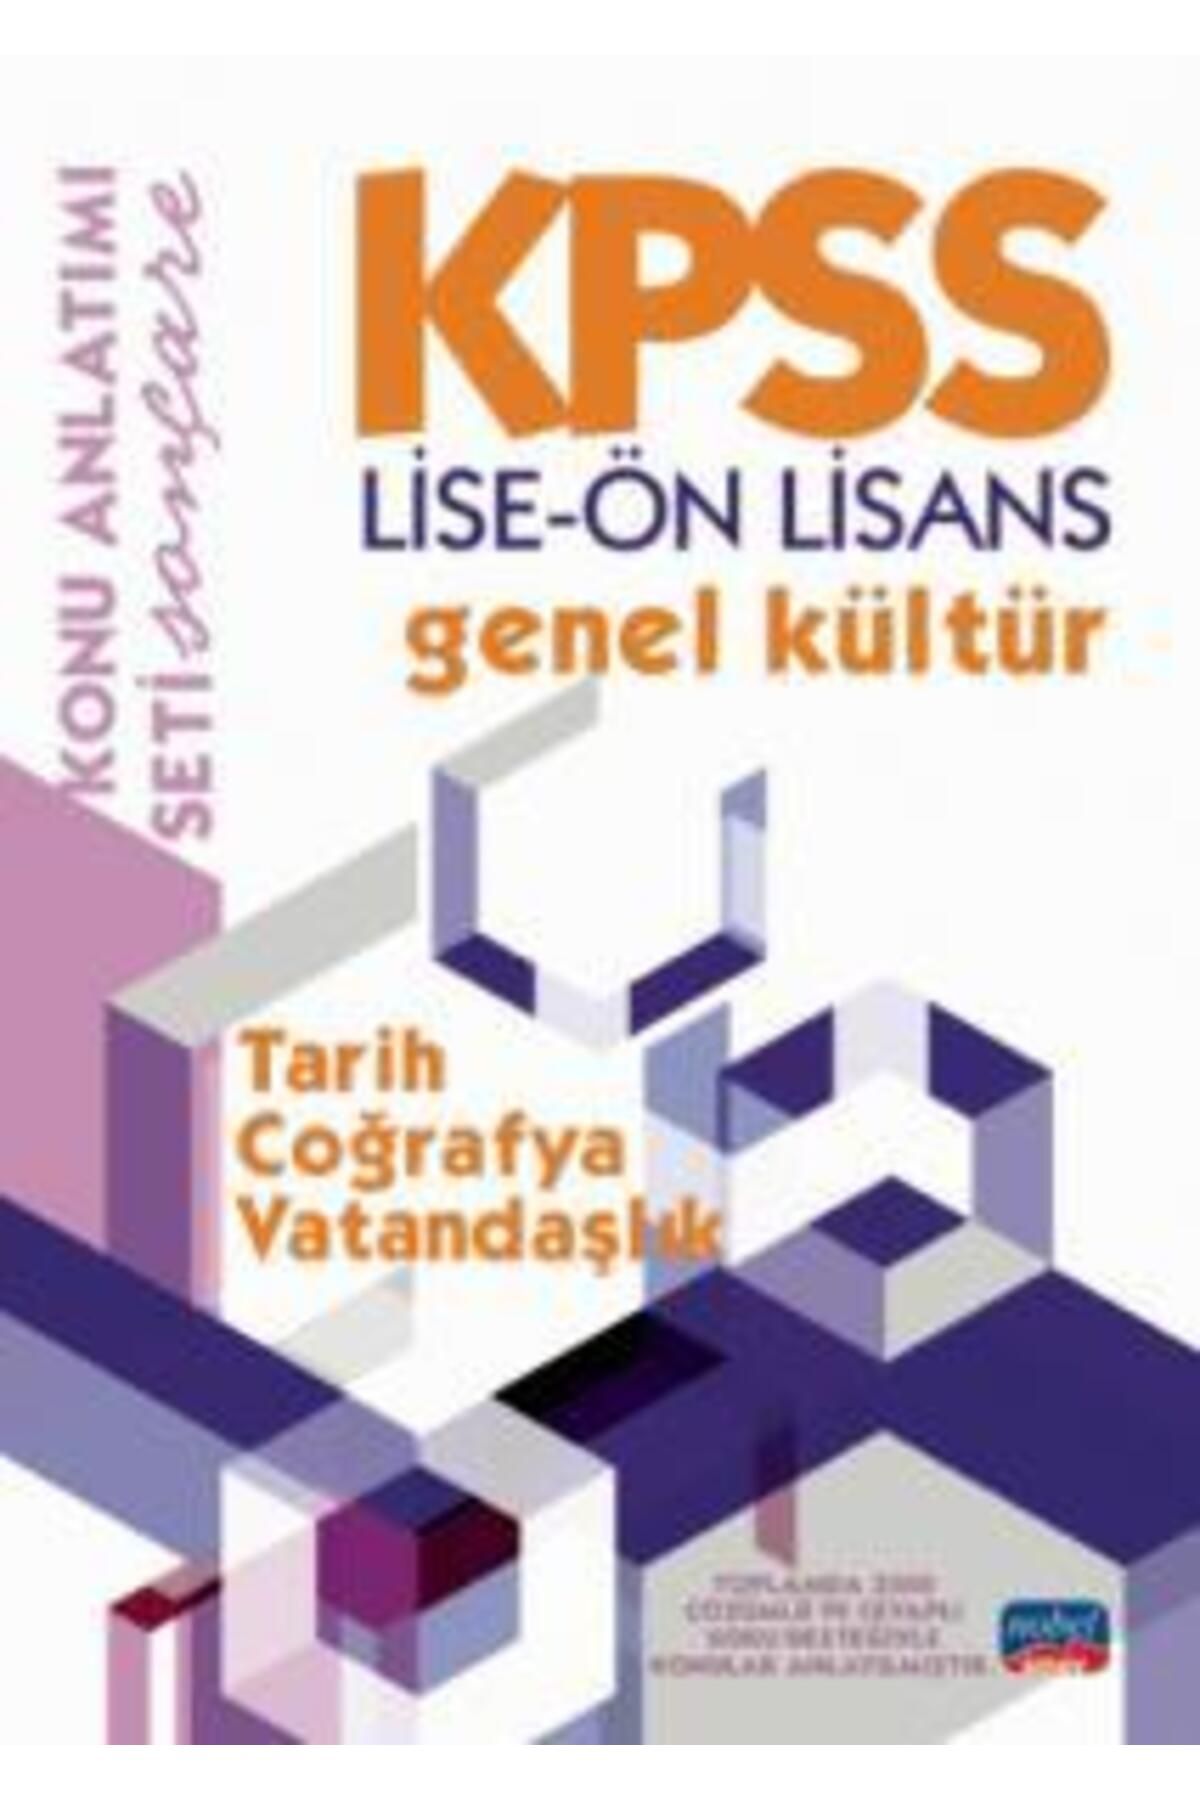 Nobel Sınav Kpss Lise-ön Lisans Genel Kültür Konu Anlatımı / Tarih - Coğrafya - Vatandaşlık